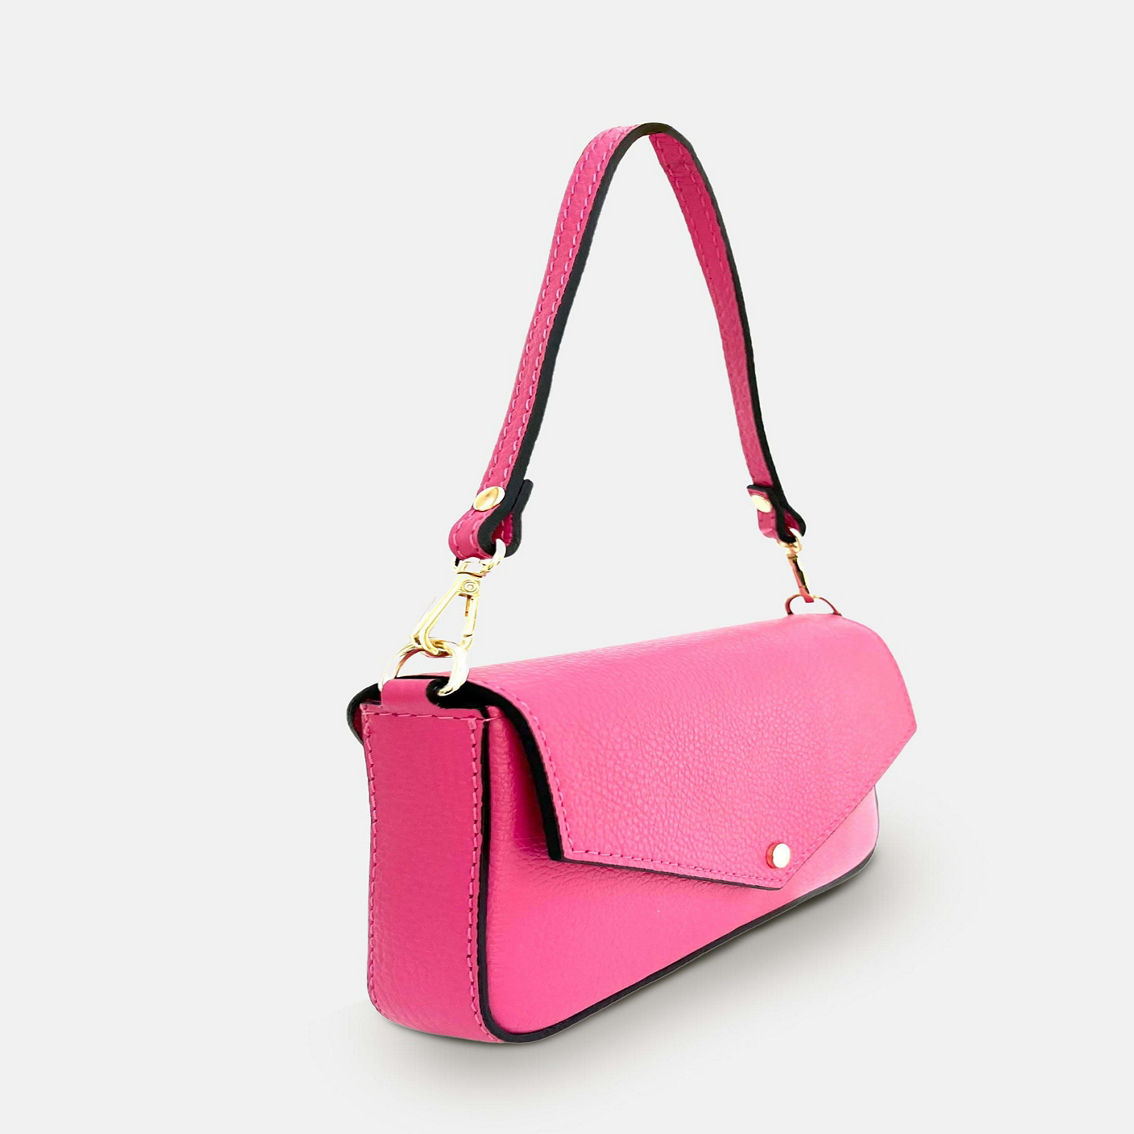 The Munro Barbie Pink Leather Shoulder Bag - Image 5 of 5